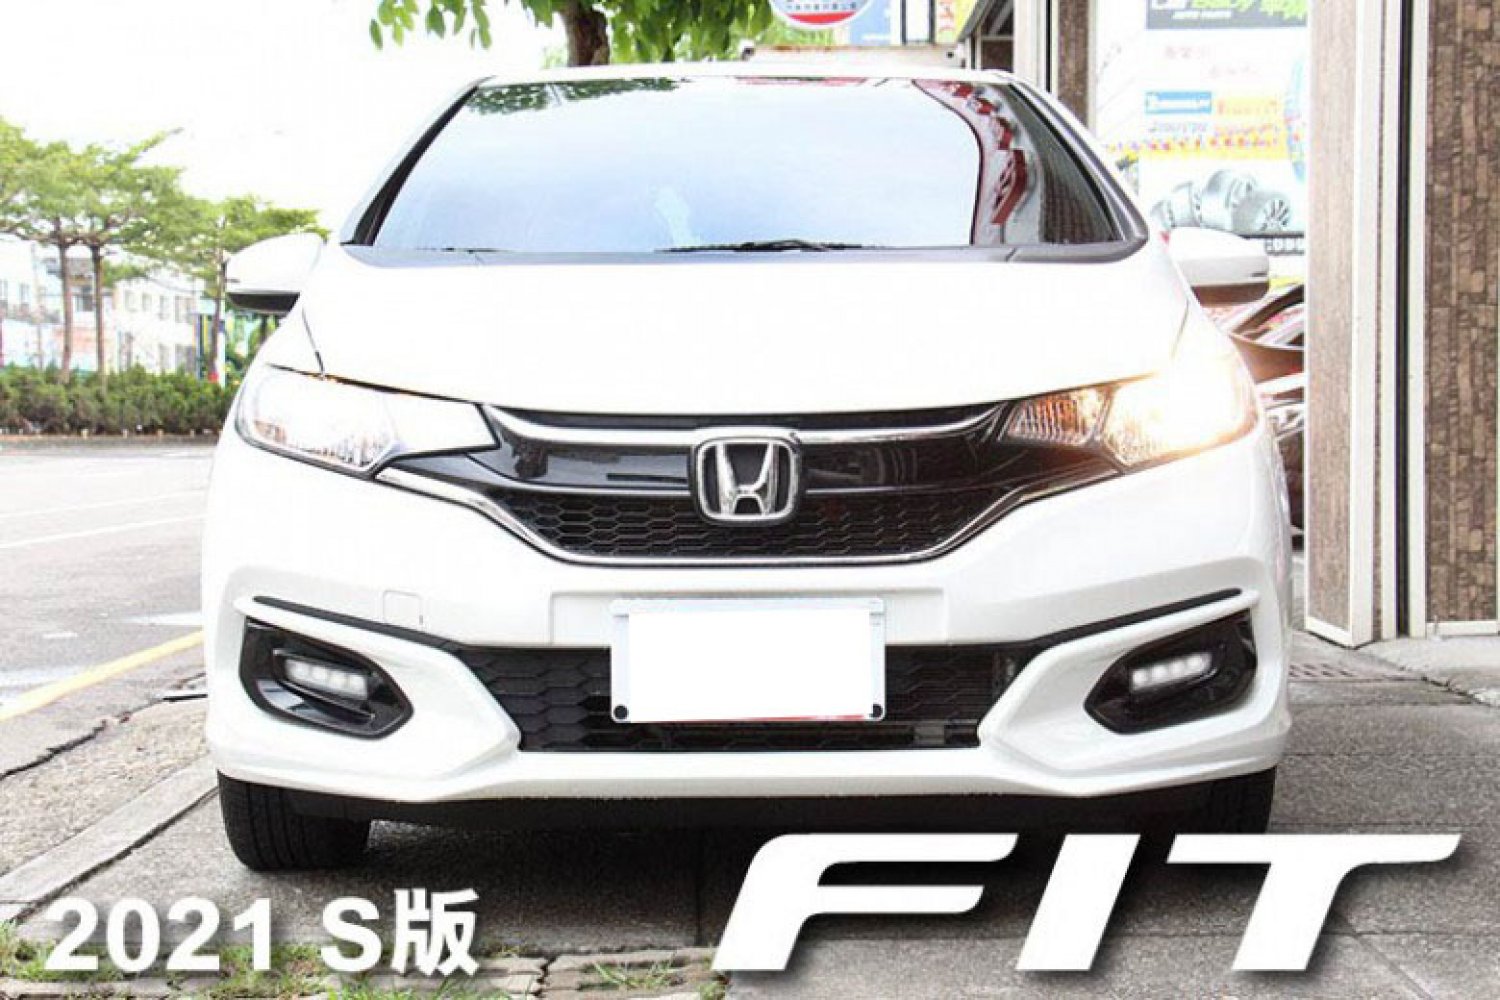 Honda 本田 ／ FIT ／ 2021年 ／ 2021年Honda Fit 白色 本田中古車 ／ 台中車庫